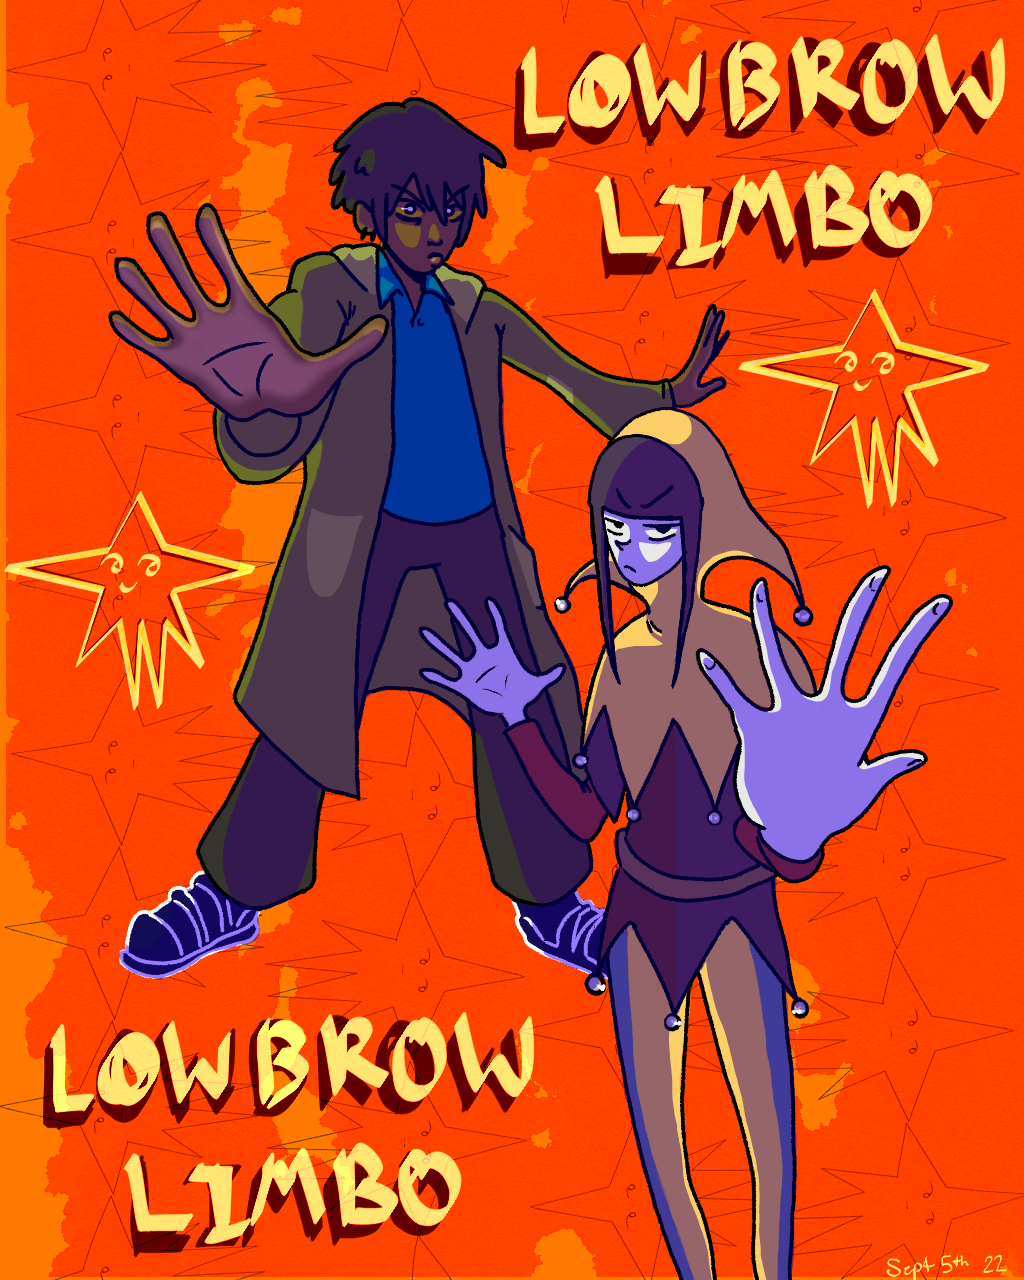 Lowbrow Limbo